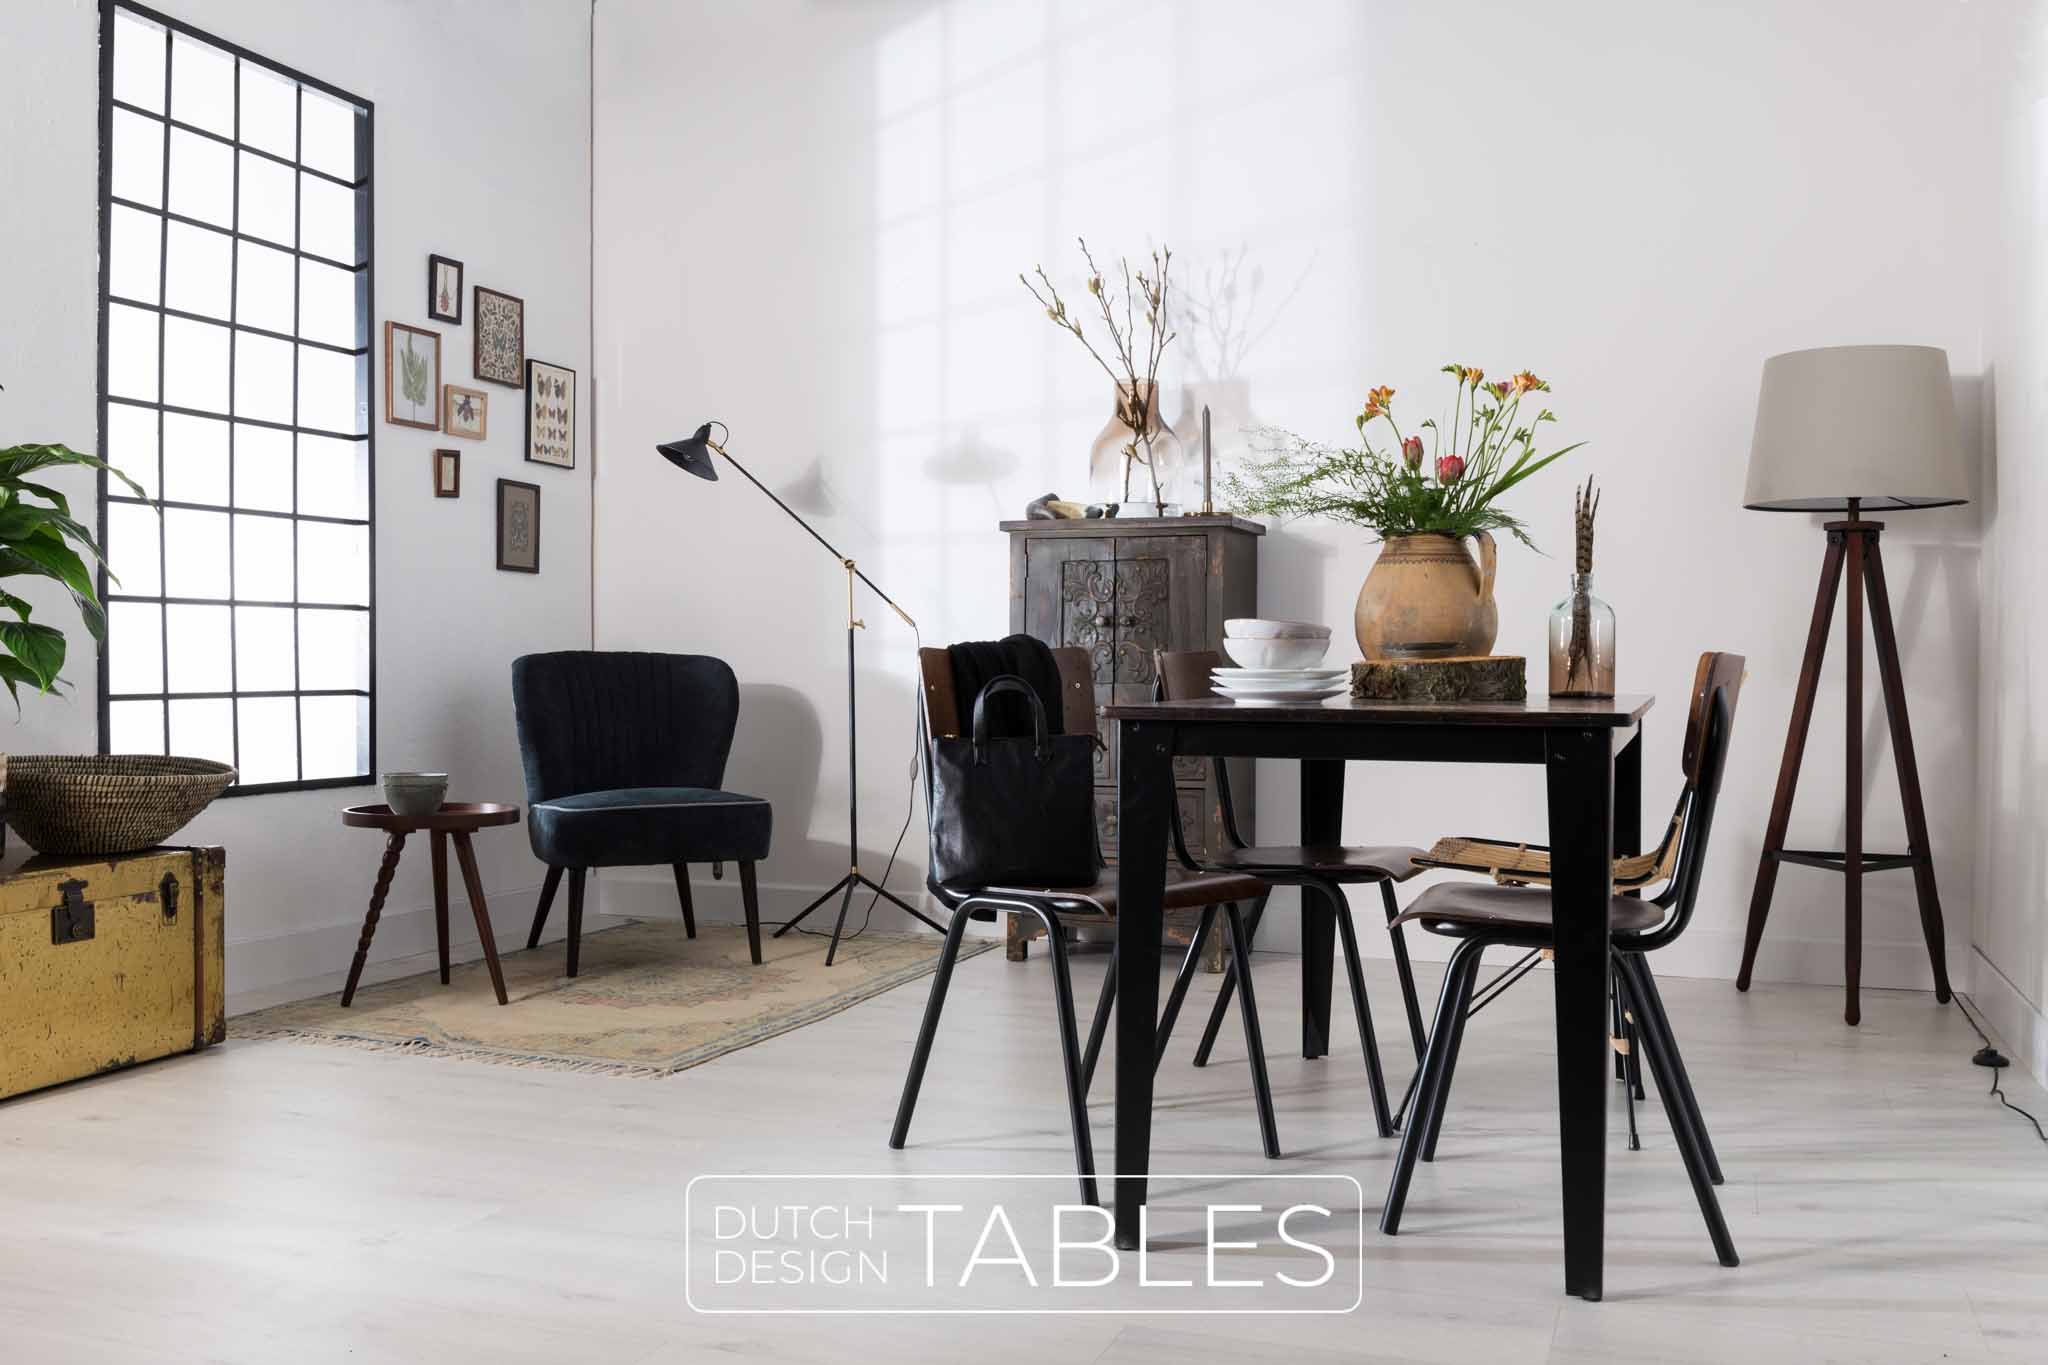 Opknappen eenvoudig Kameraad Tafel Dutchbone Scuola | Geschikt voor kleine ruimtes | Snel in huis! –  Dutch Design Tables